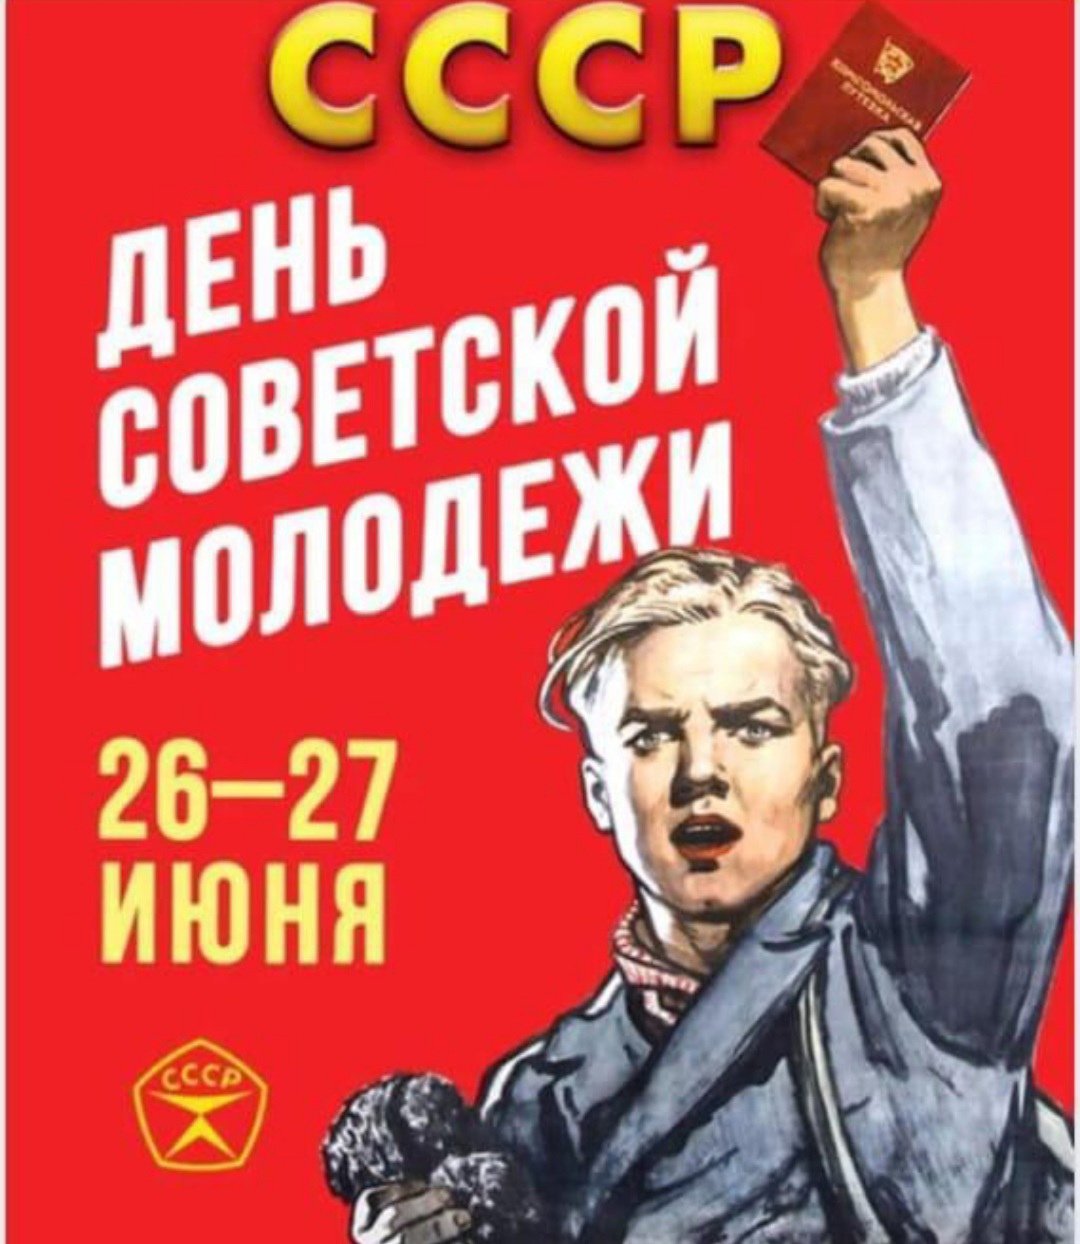 С днем Советской молодежи